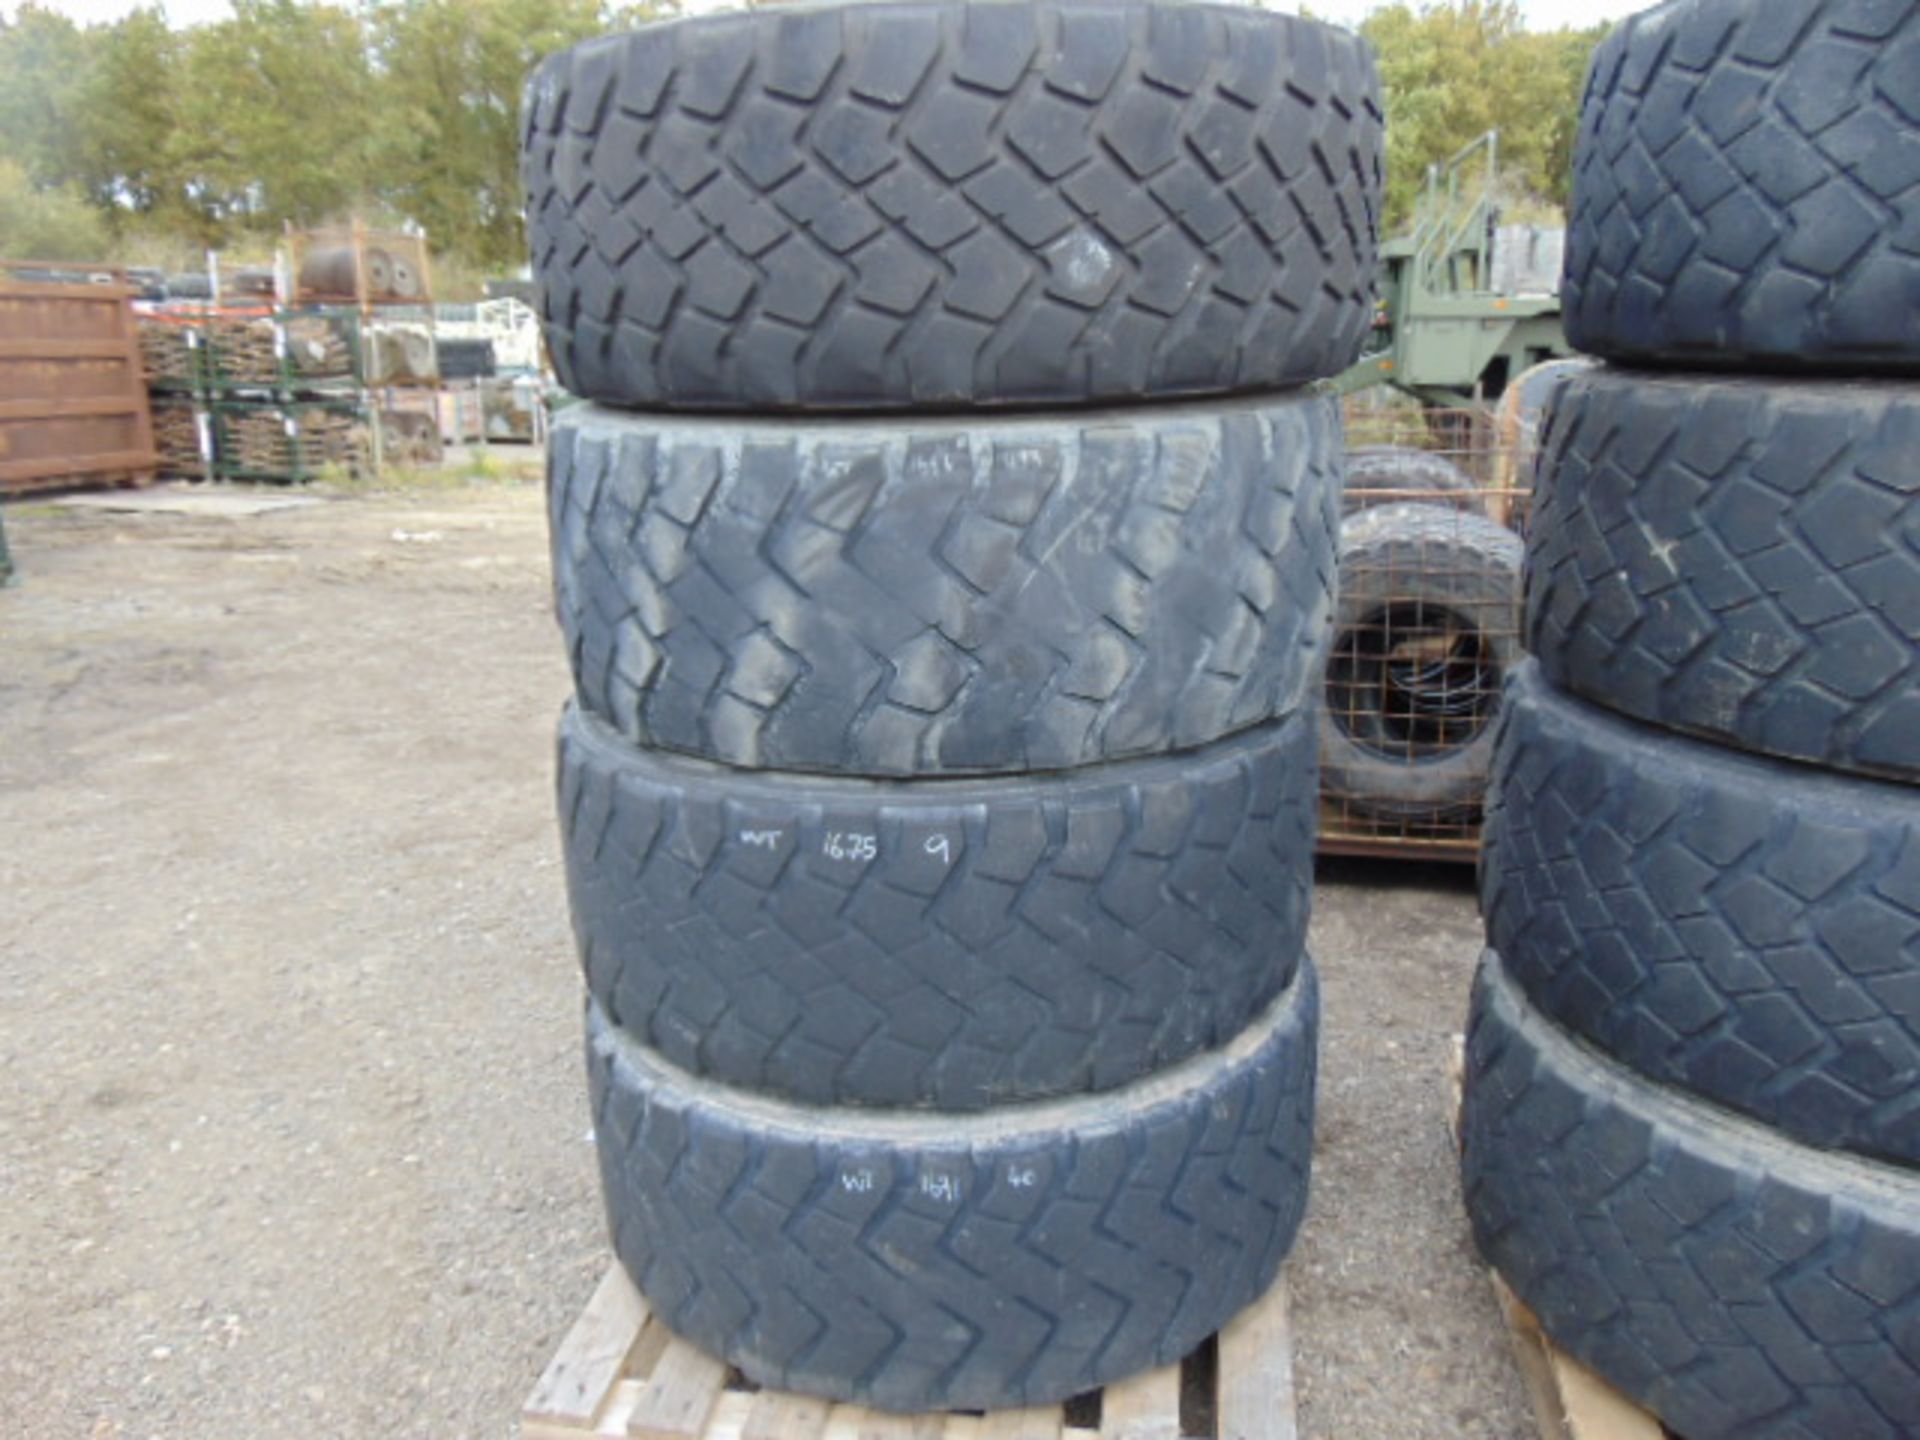 4 x Michelin XZL 445/65 R22.5 Tyres